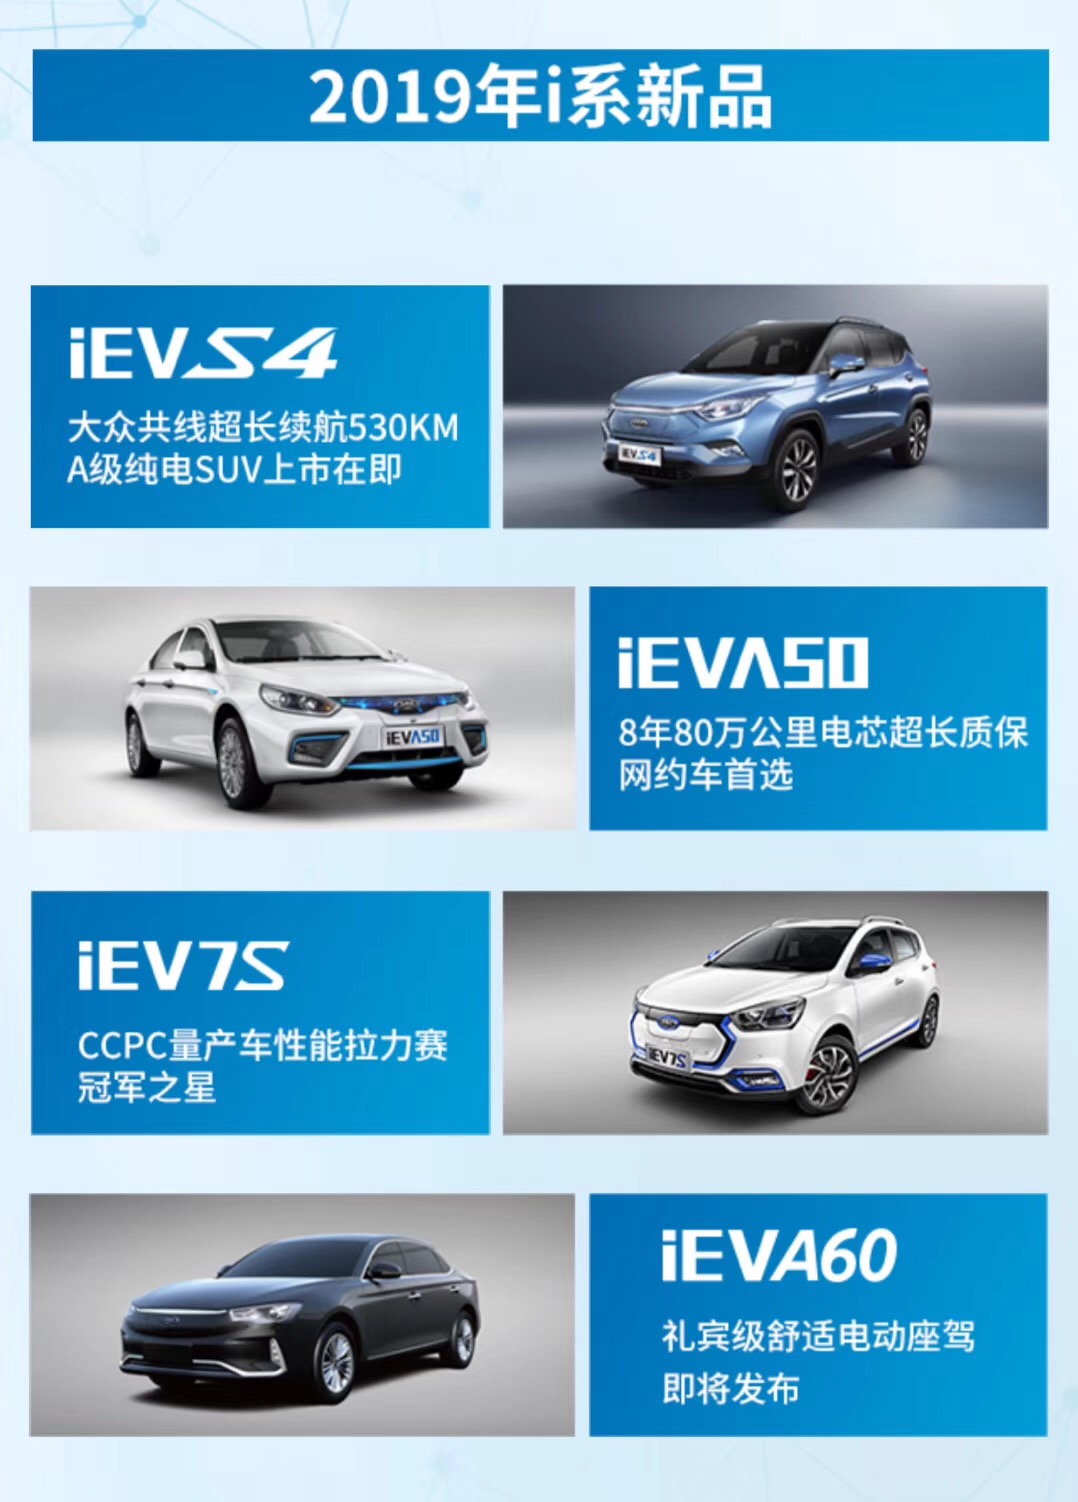 推4款车型 江淮新能源发布2019年i系产品规划